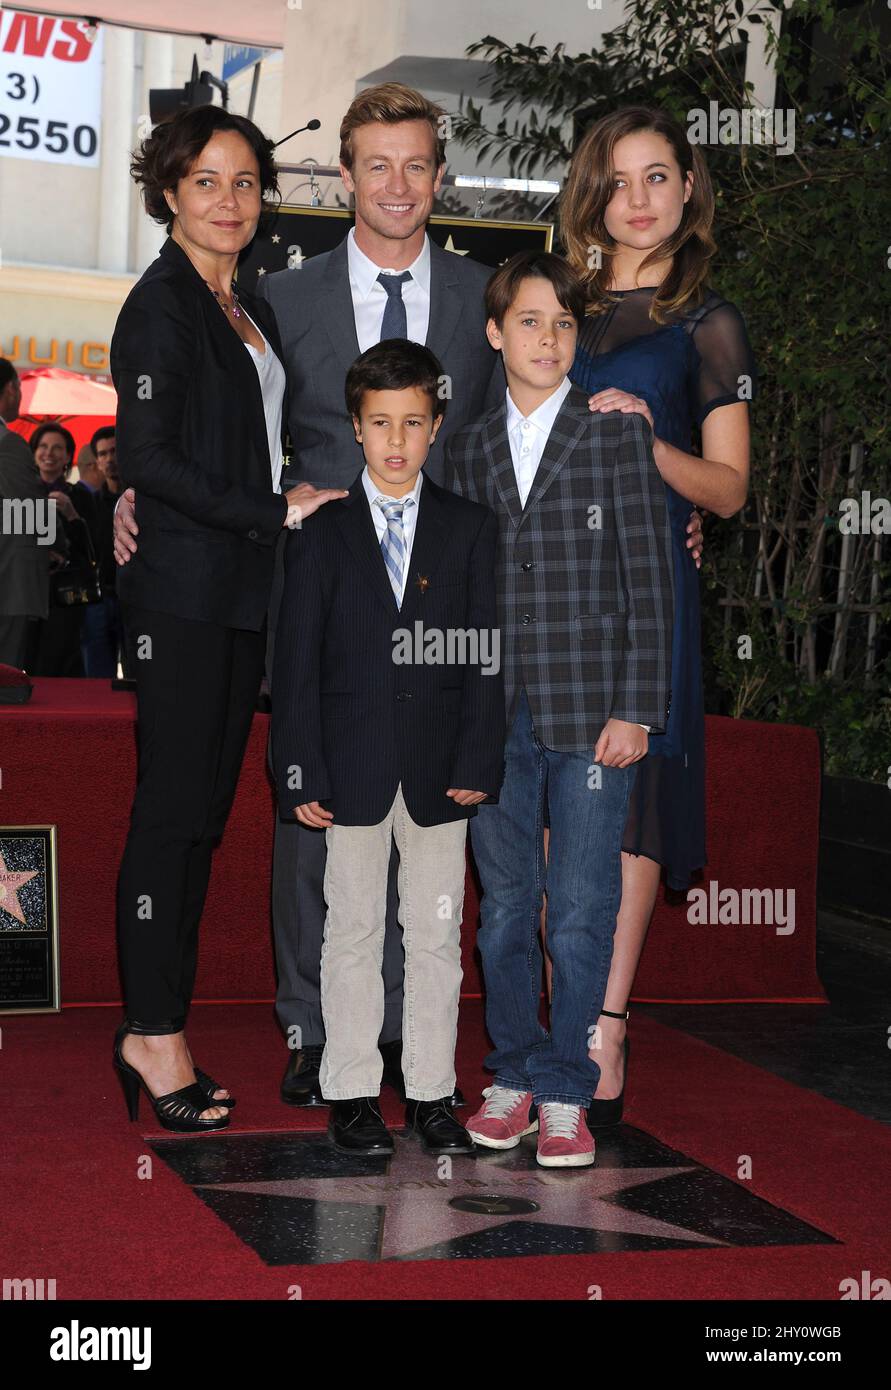 Rebecca Rigg, Simon Baker, su hija Stella Baker, sus hijos Claude Baker y Harry Baker Simon Baker fueron honrados con Star en el Paseo de la Fama de Hollywood Foto de stock